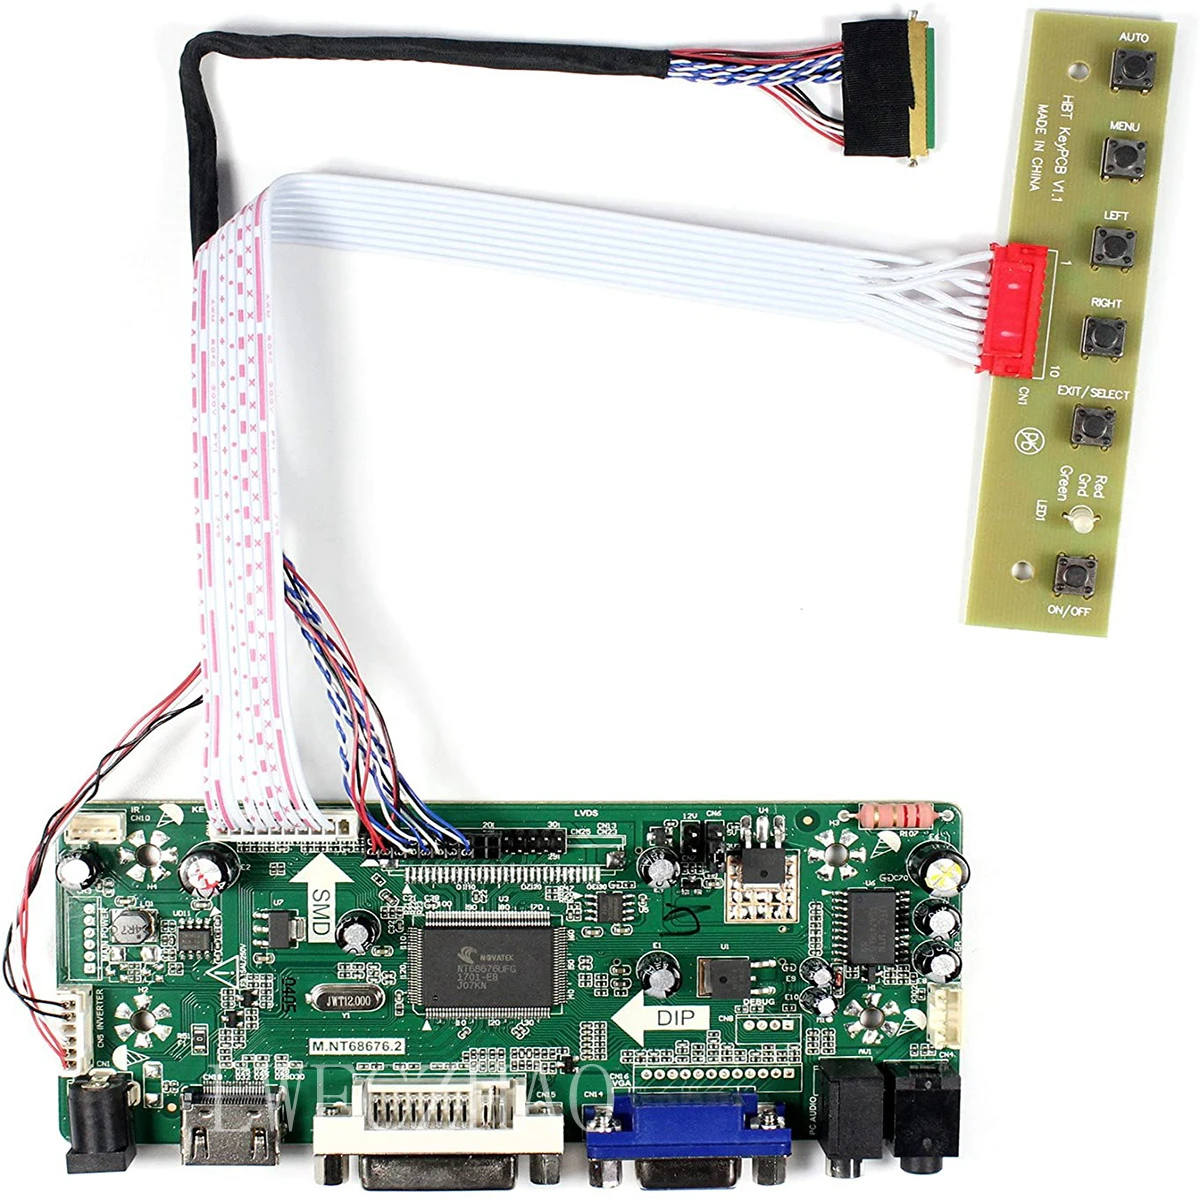 Kit de Monitor de placa de Control para B173RW01 V0 V3 V4 V5 HDMI + DVI + VGA LCD LED, controlador de placa controladora